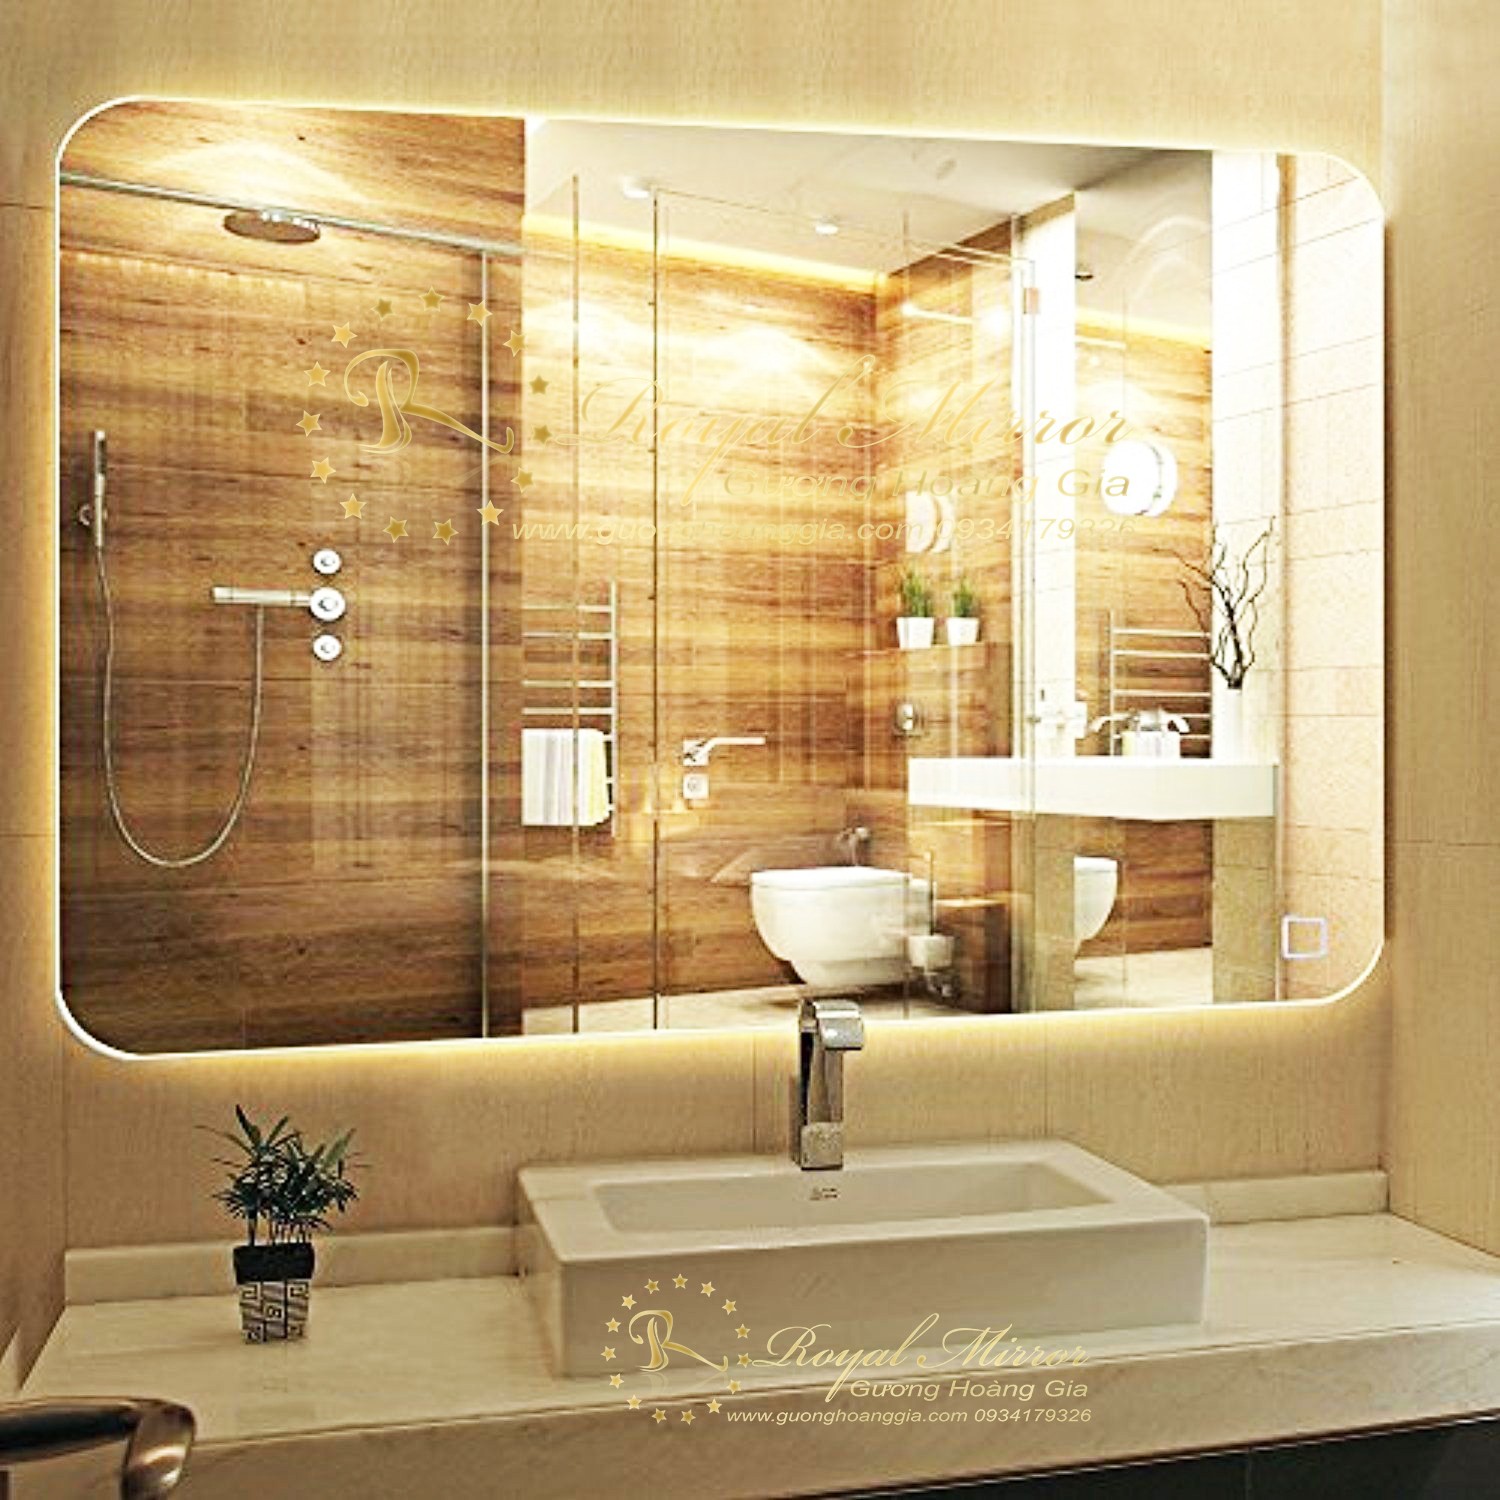 Đục gương nhà tắm: Với công nghệ đục gương cao cấp, việc trang trí phòng tắm giờ đây đã trở nên dễ dàng và độc đáo hơn bao giờ hết. các mẫu đục gương được thiết kế riêng biệt và đa dạng để phù hợp với nhu cầu của mỗi khách hàng. Tận dụng tinh thần sáng tạo của bạn và trang trí cho phòng tắm được thêm đẹp và ấn tượng hơn.